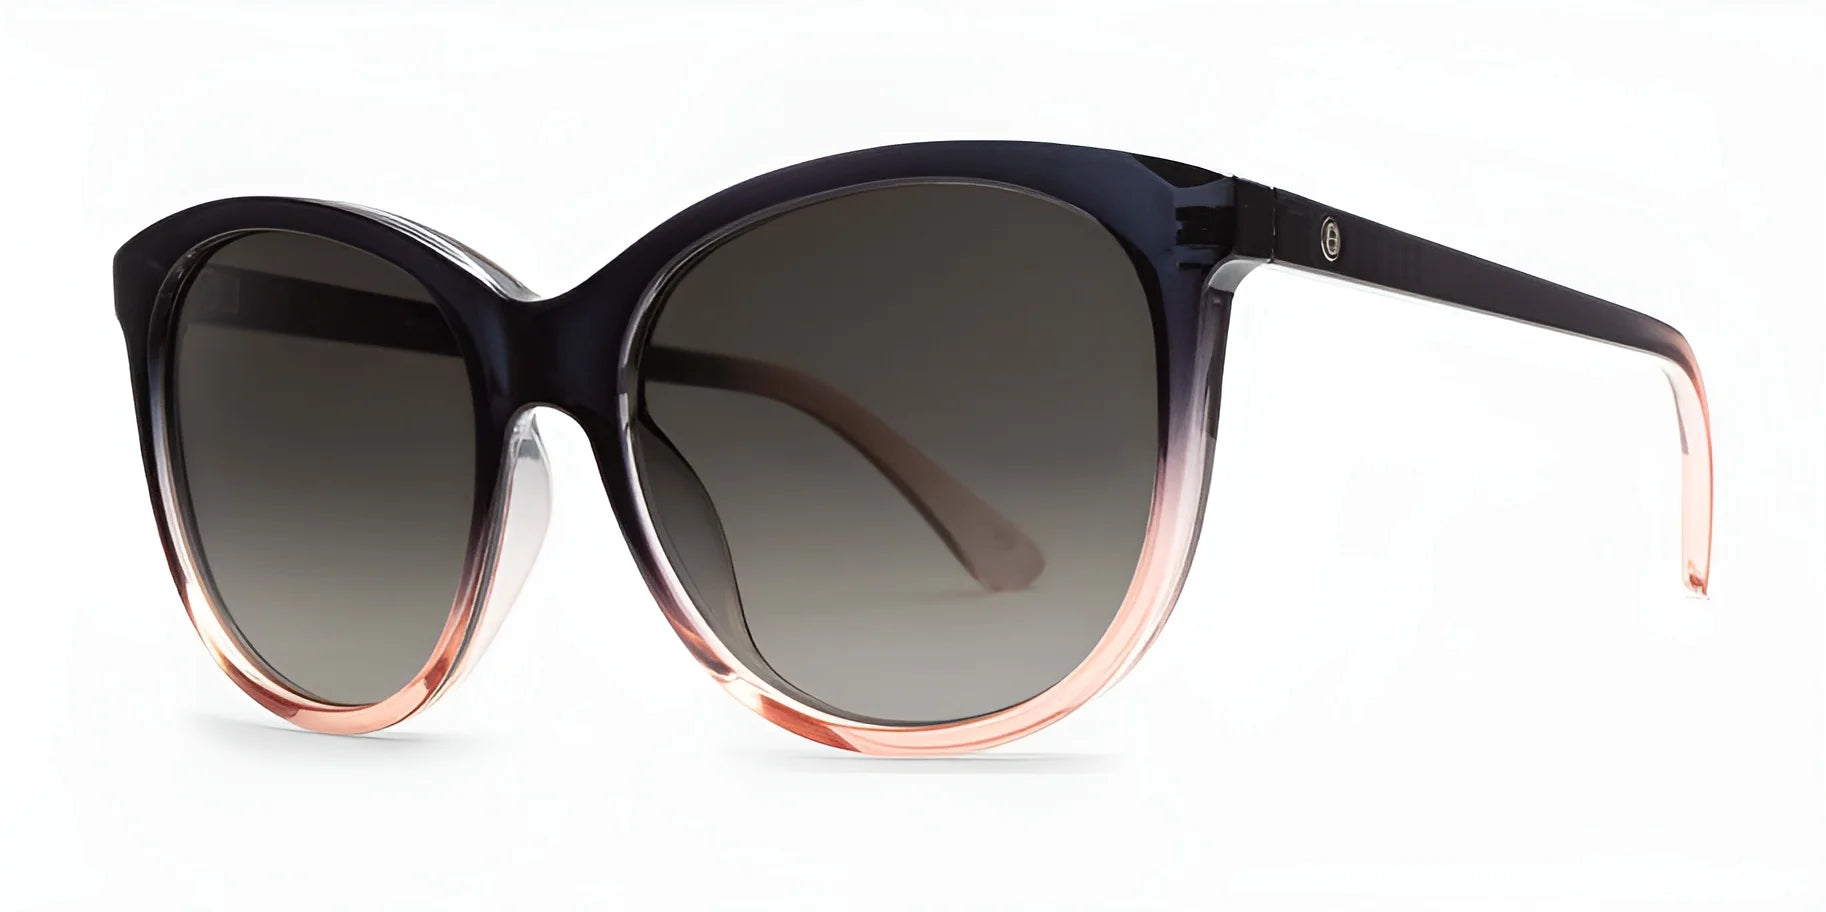 Electric Palm Sunglasses Contour / Black Gradient